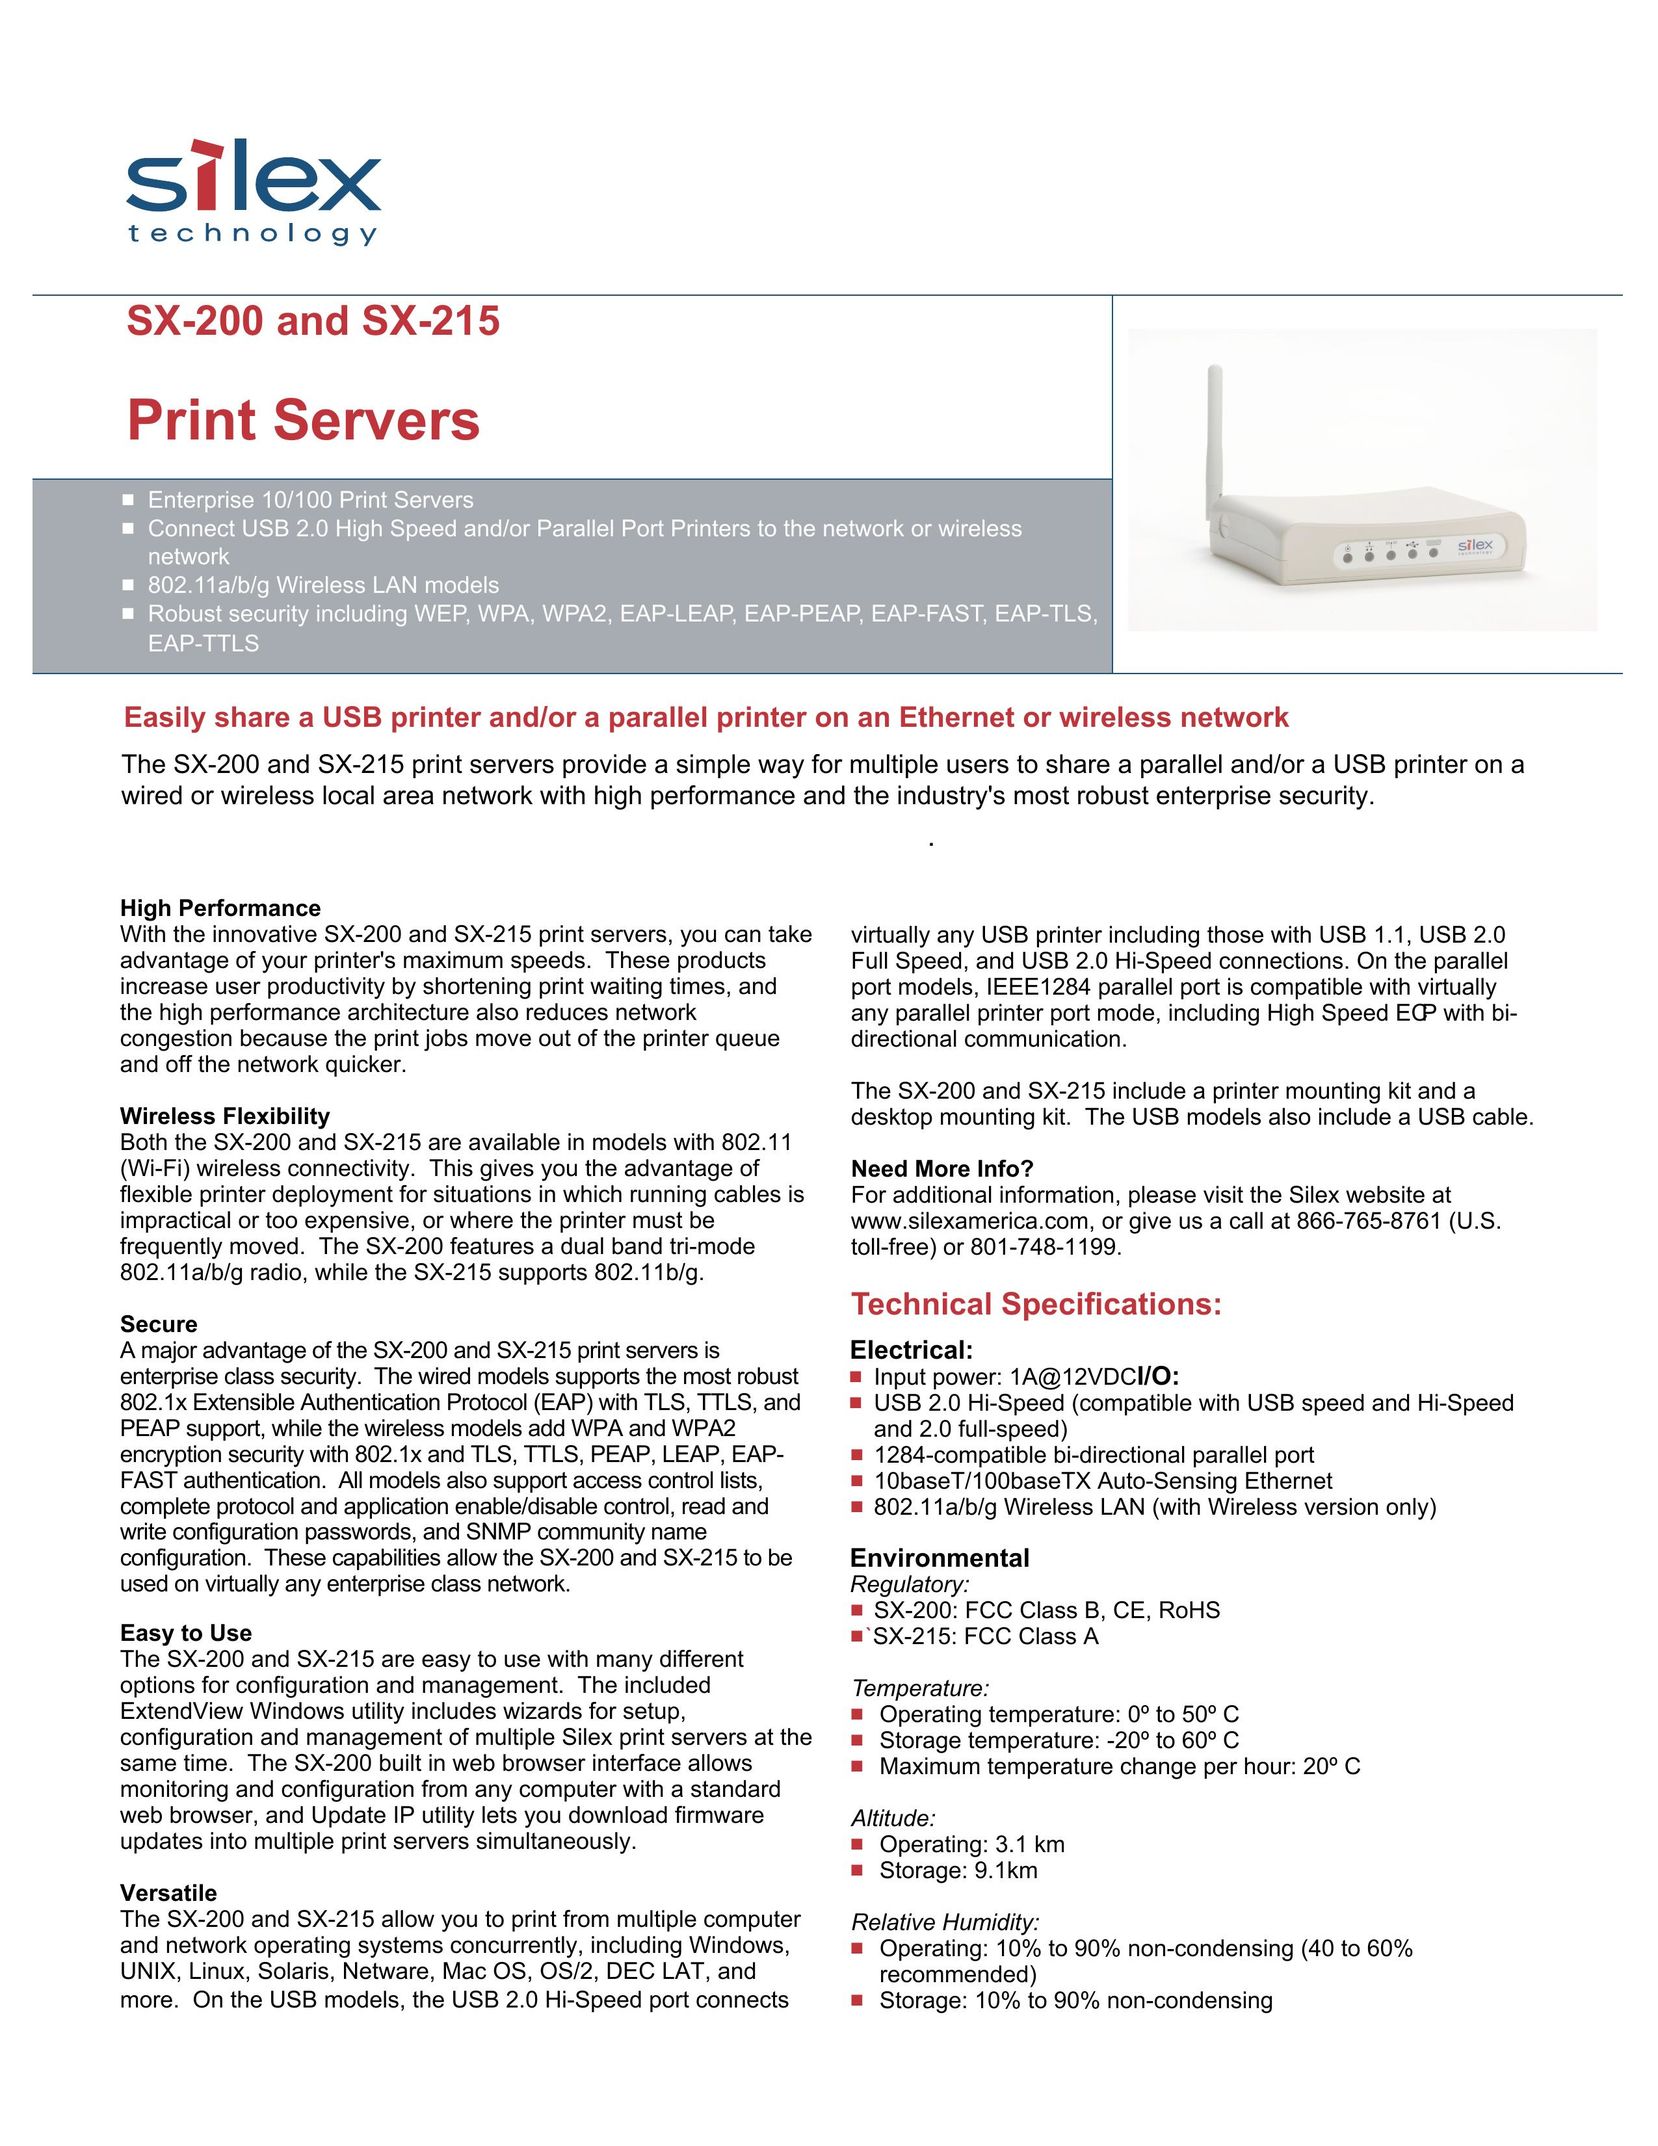 Silex technology SX-215 Network Card User Manual